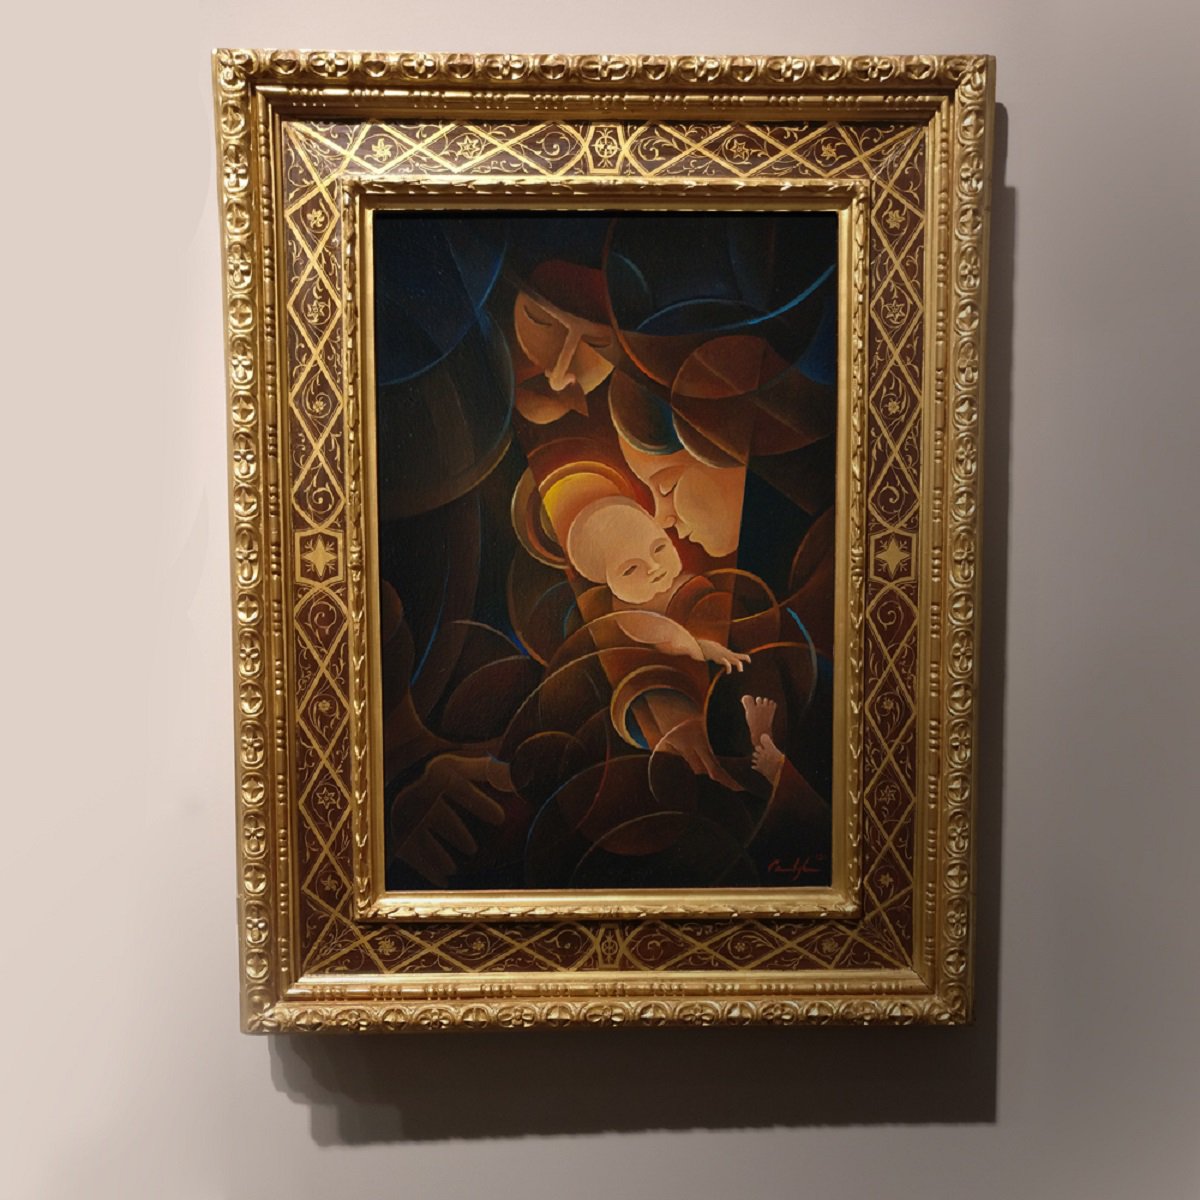 Sagrada familia - Oil on canvas, 40 x 60 cm - Op.120 (2020) by Martin Cambriglia